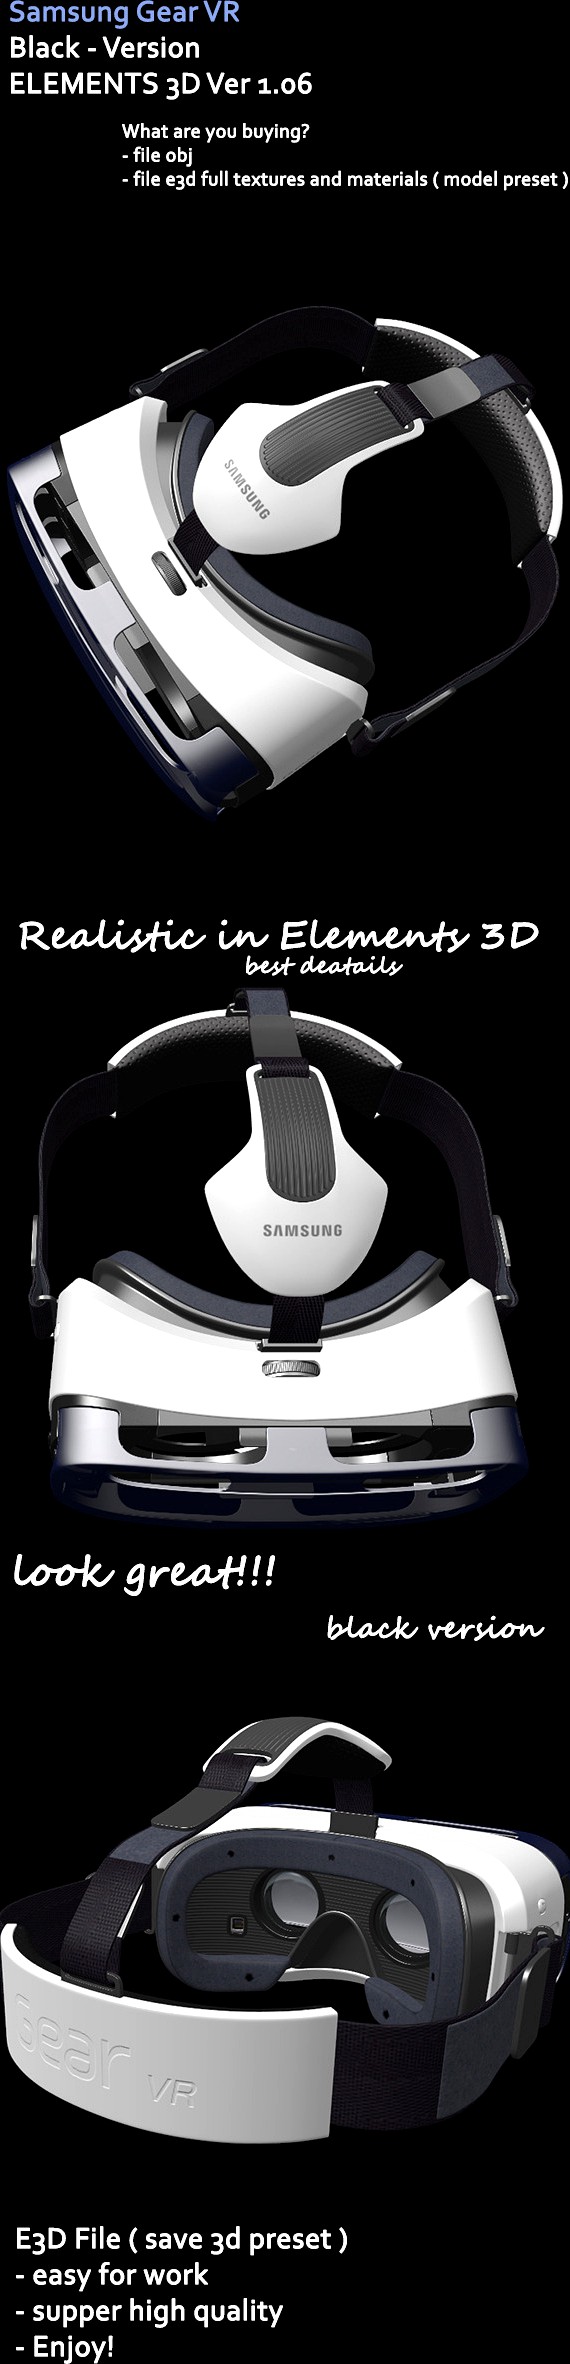 Samsung Gear VR Element3D